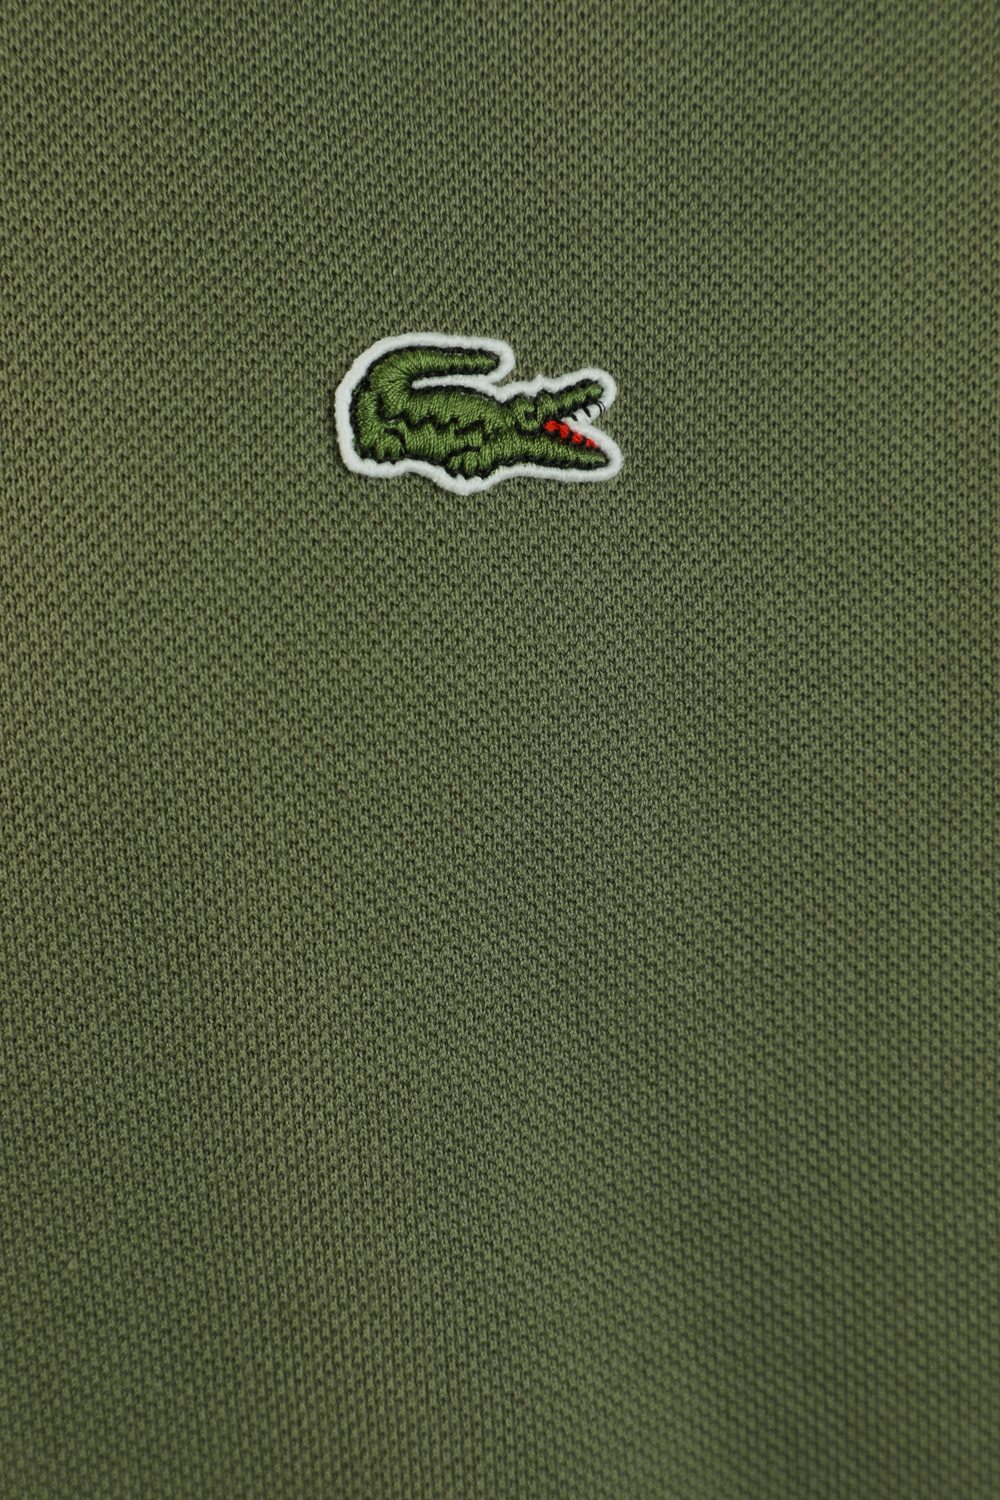 חולצת פולו בגוון ירוק חאקי עם לוגו LACOSTE